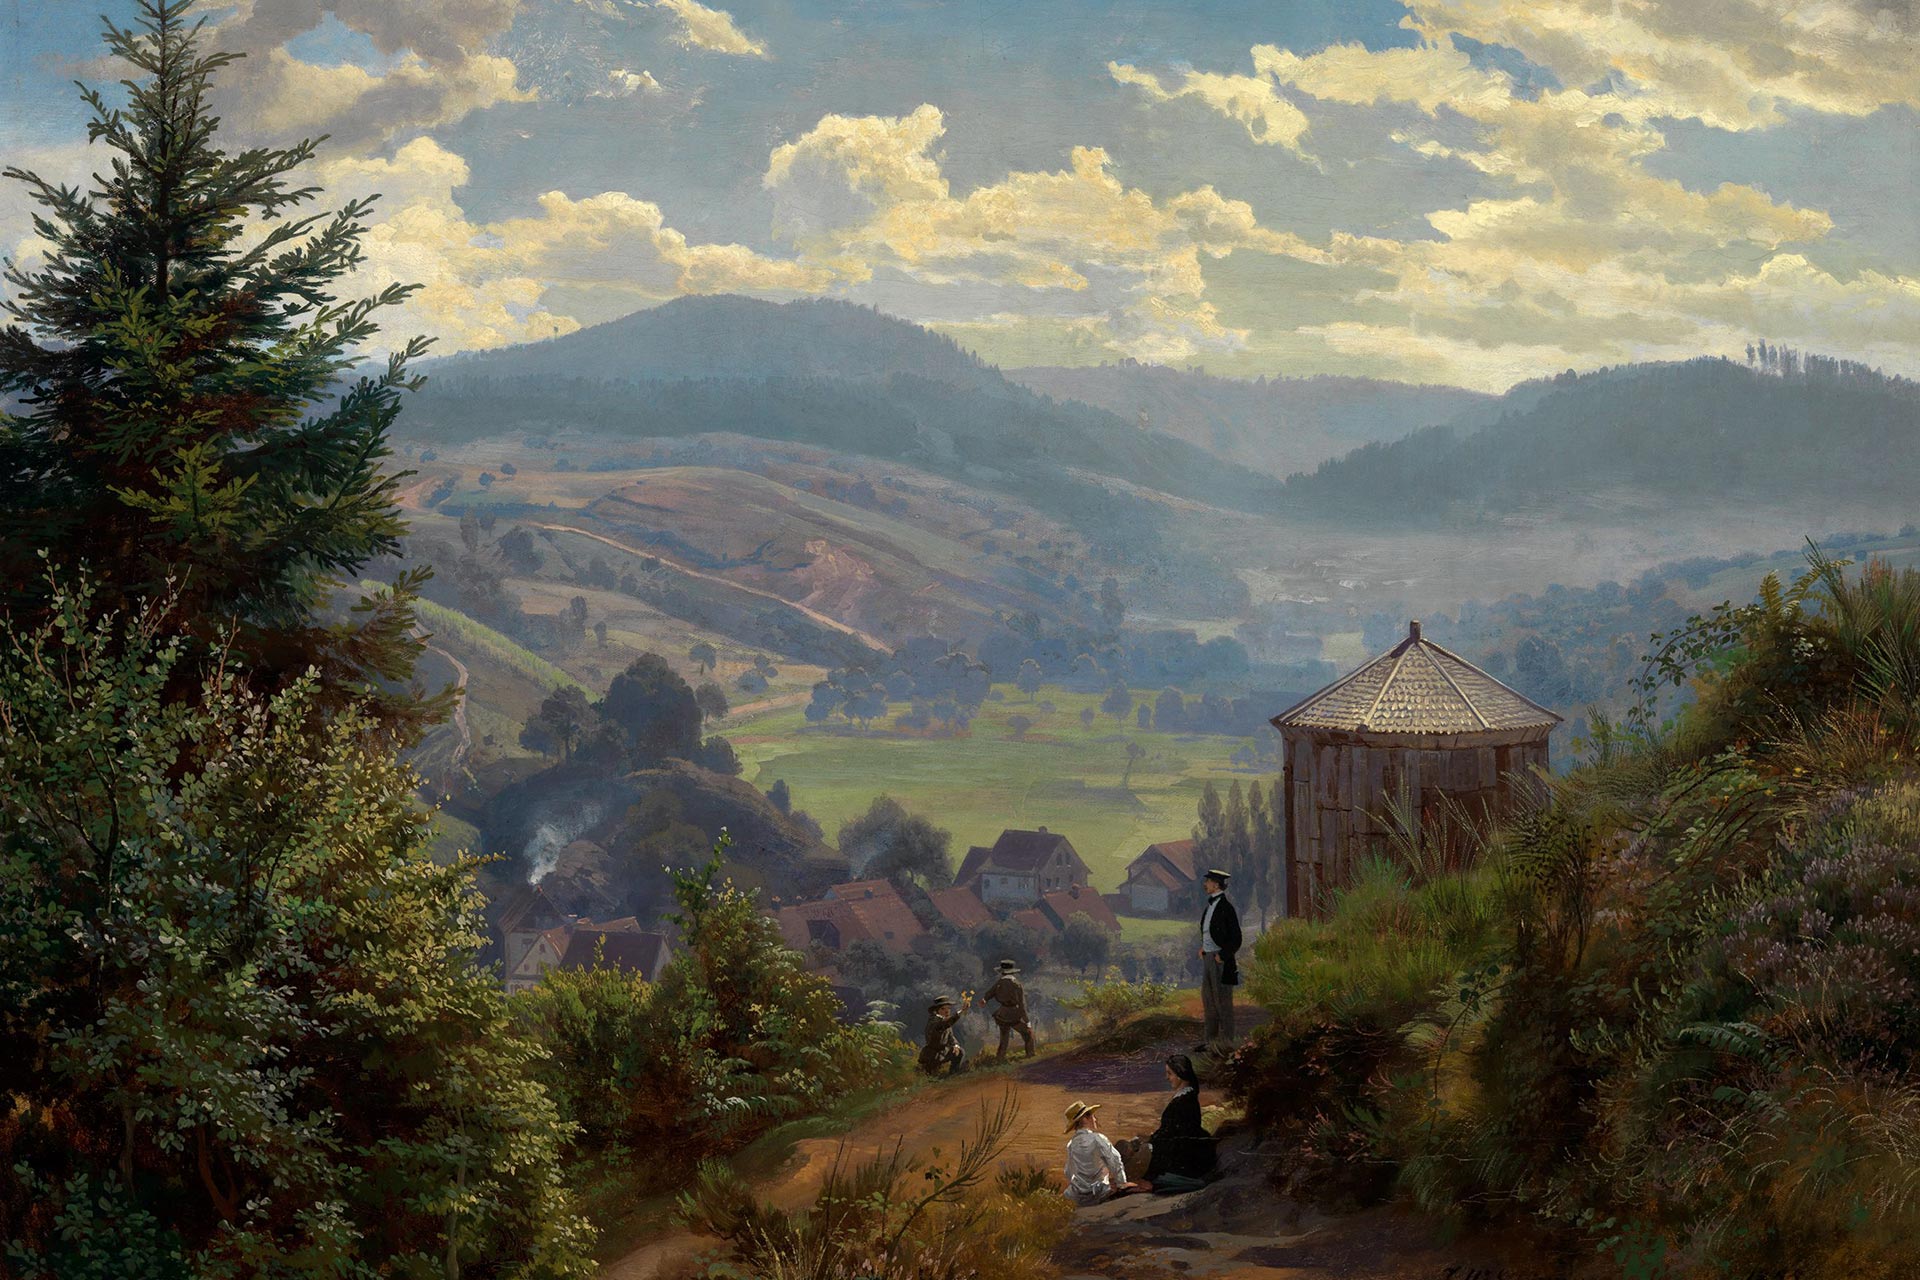 Gemälde von Johann Wilhelm Schirmer, dass das Oberbeuerner Tal vom Cäcilienberg aus zeigt. Man blickt in ein Tal mit Wiesen und Bäumen. In Vordergrund sieht man Personen an einer oktogonalen Hütte.